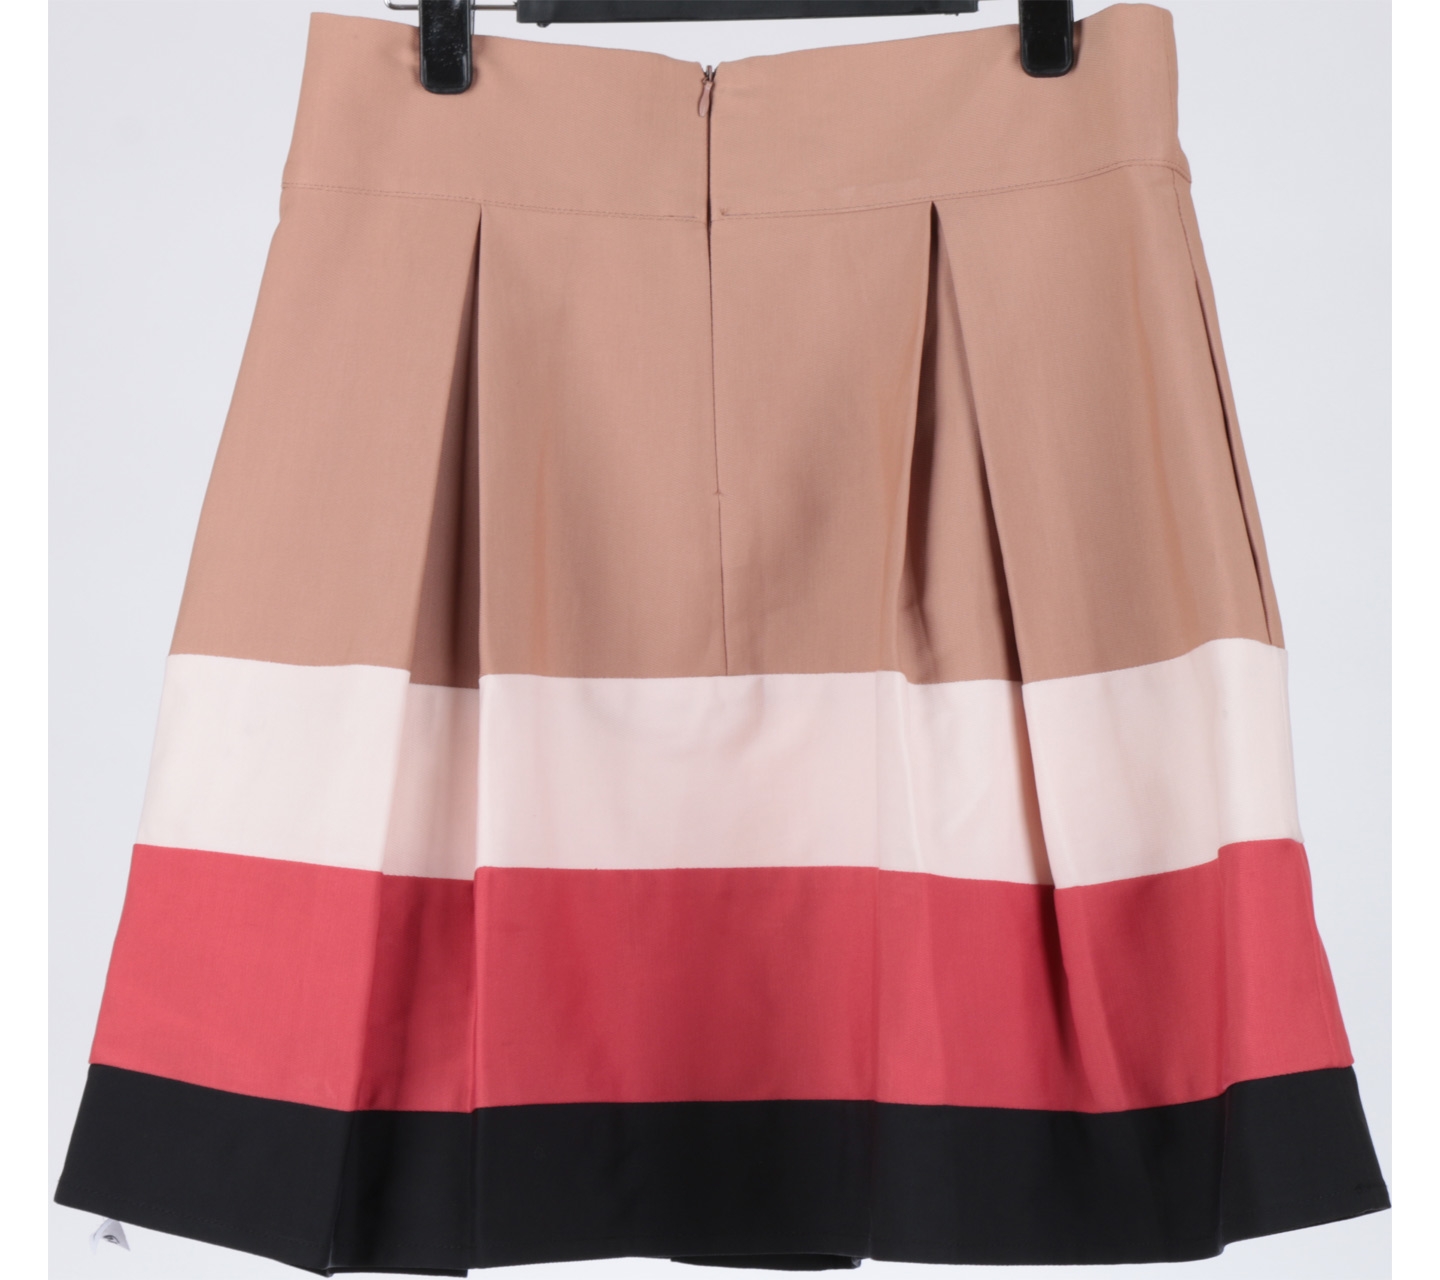 Zara Multi Colour Skirt